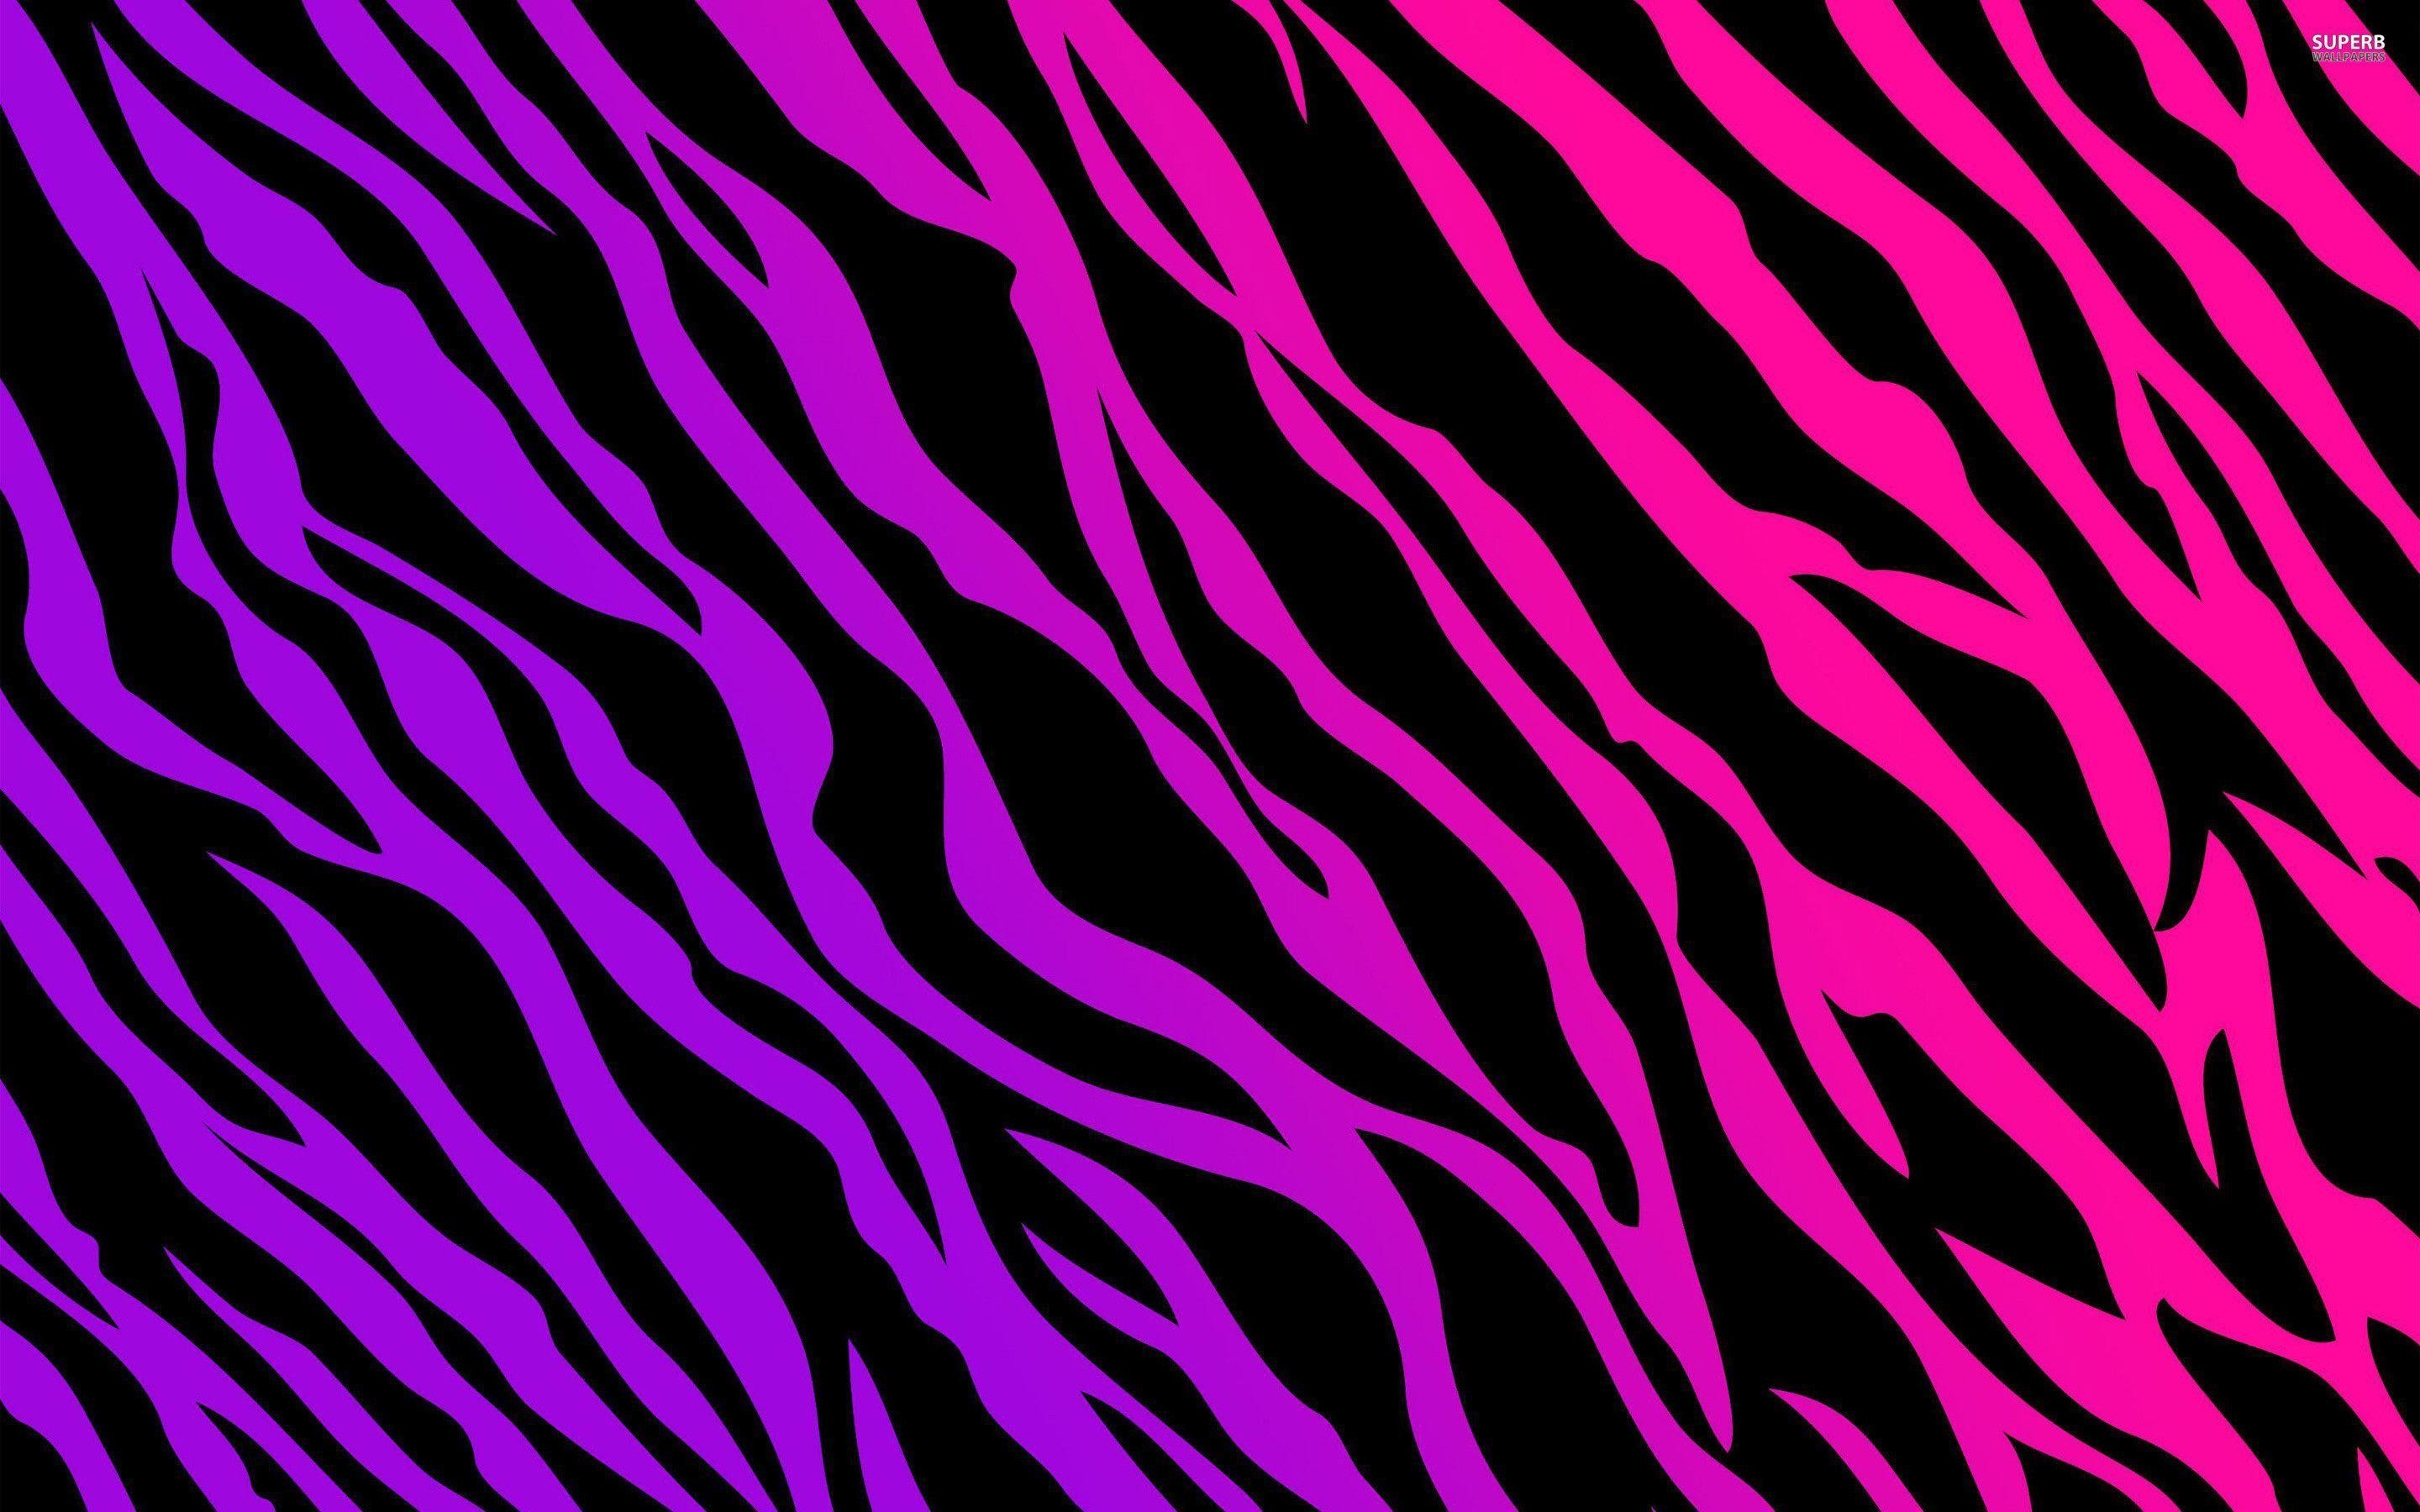 Wallpapers For > Neon Zebra Print Desktop Backgrounds